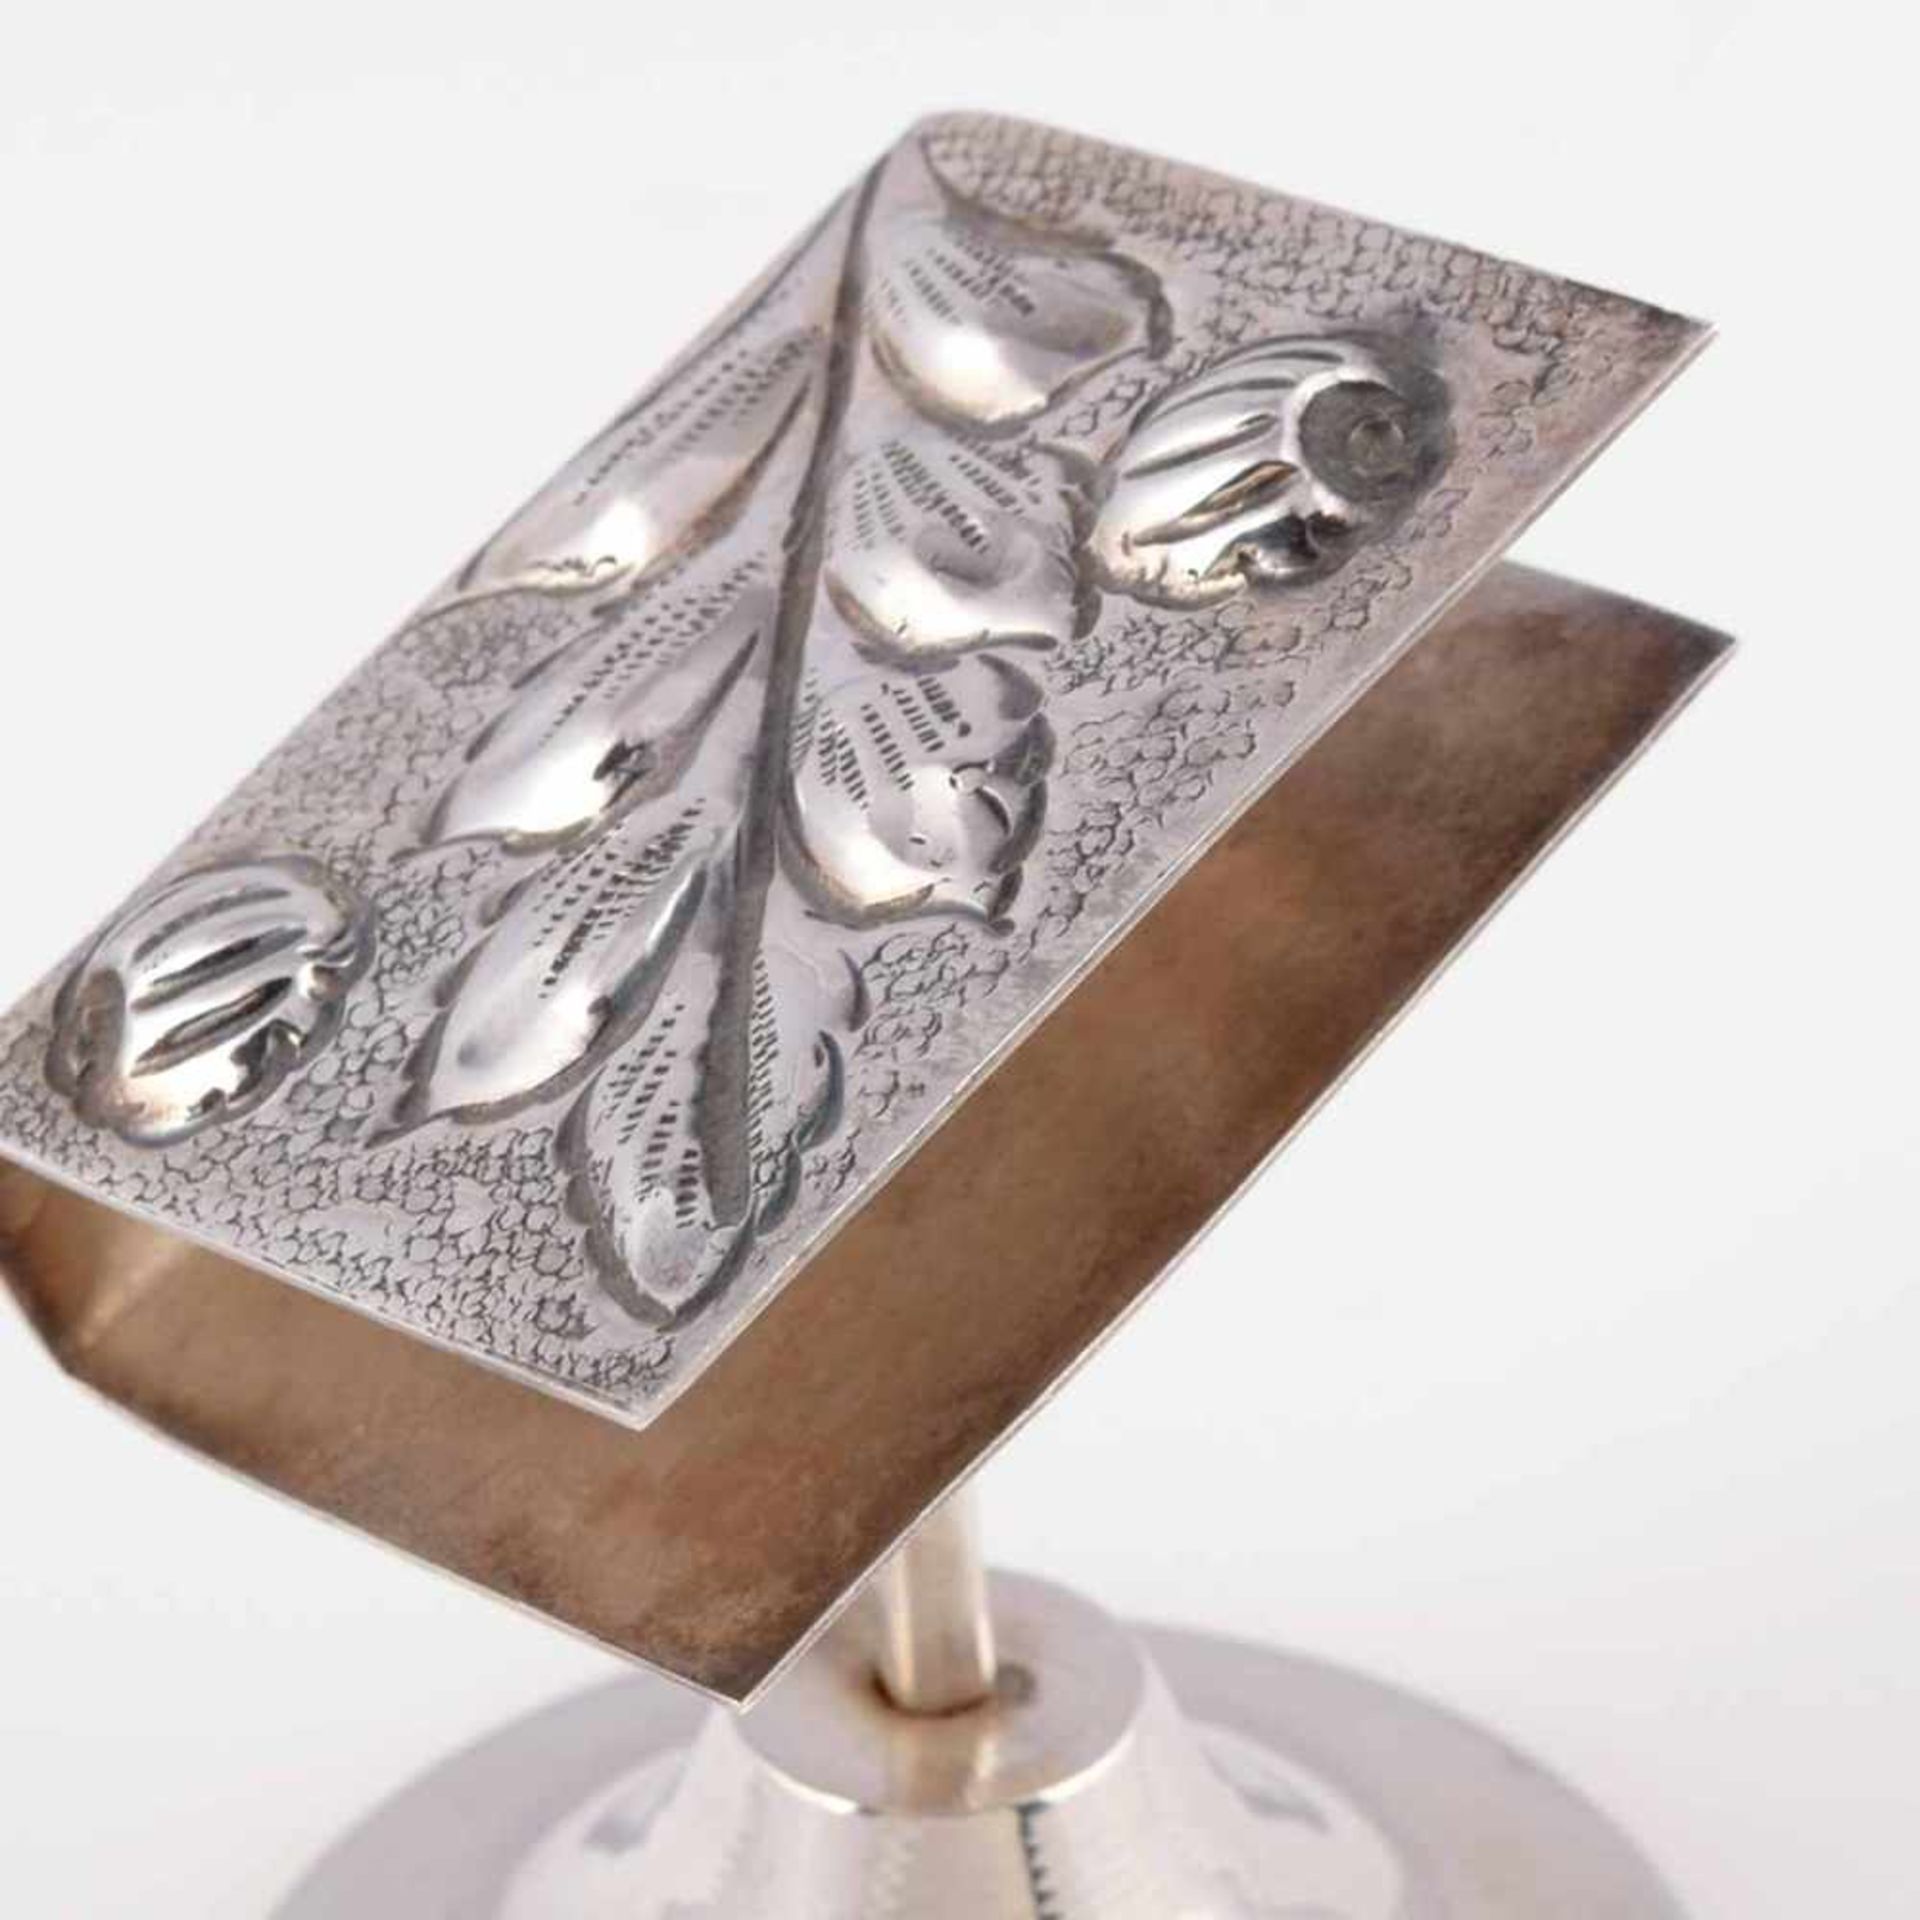 Ständer für Streichholzschachtel Silber 900, gemarkt "Kivircik", buchförmige Halterung mit